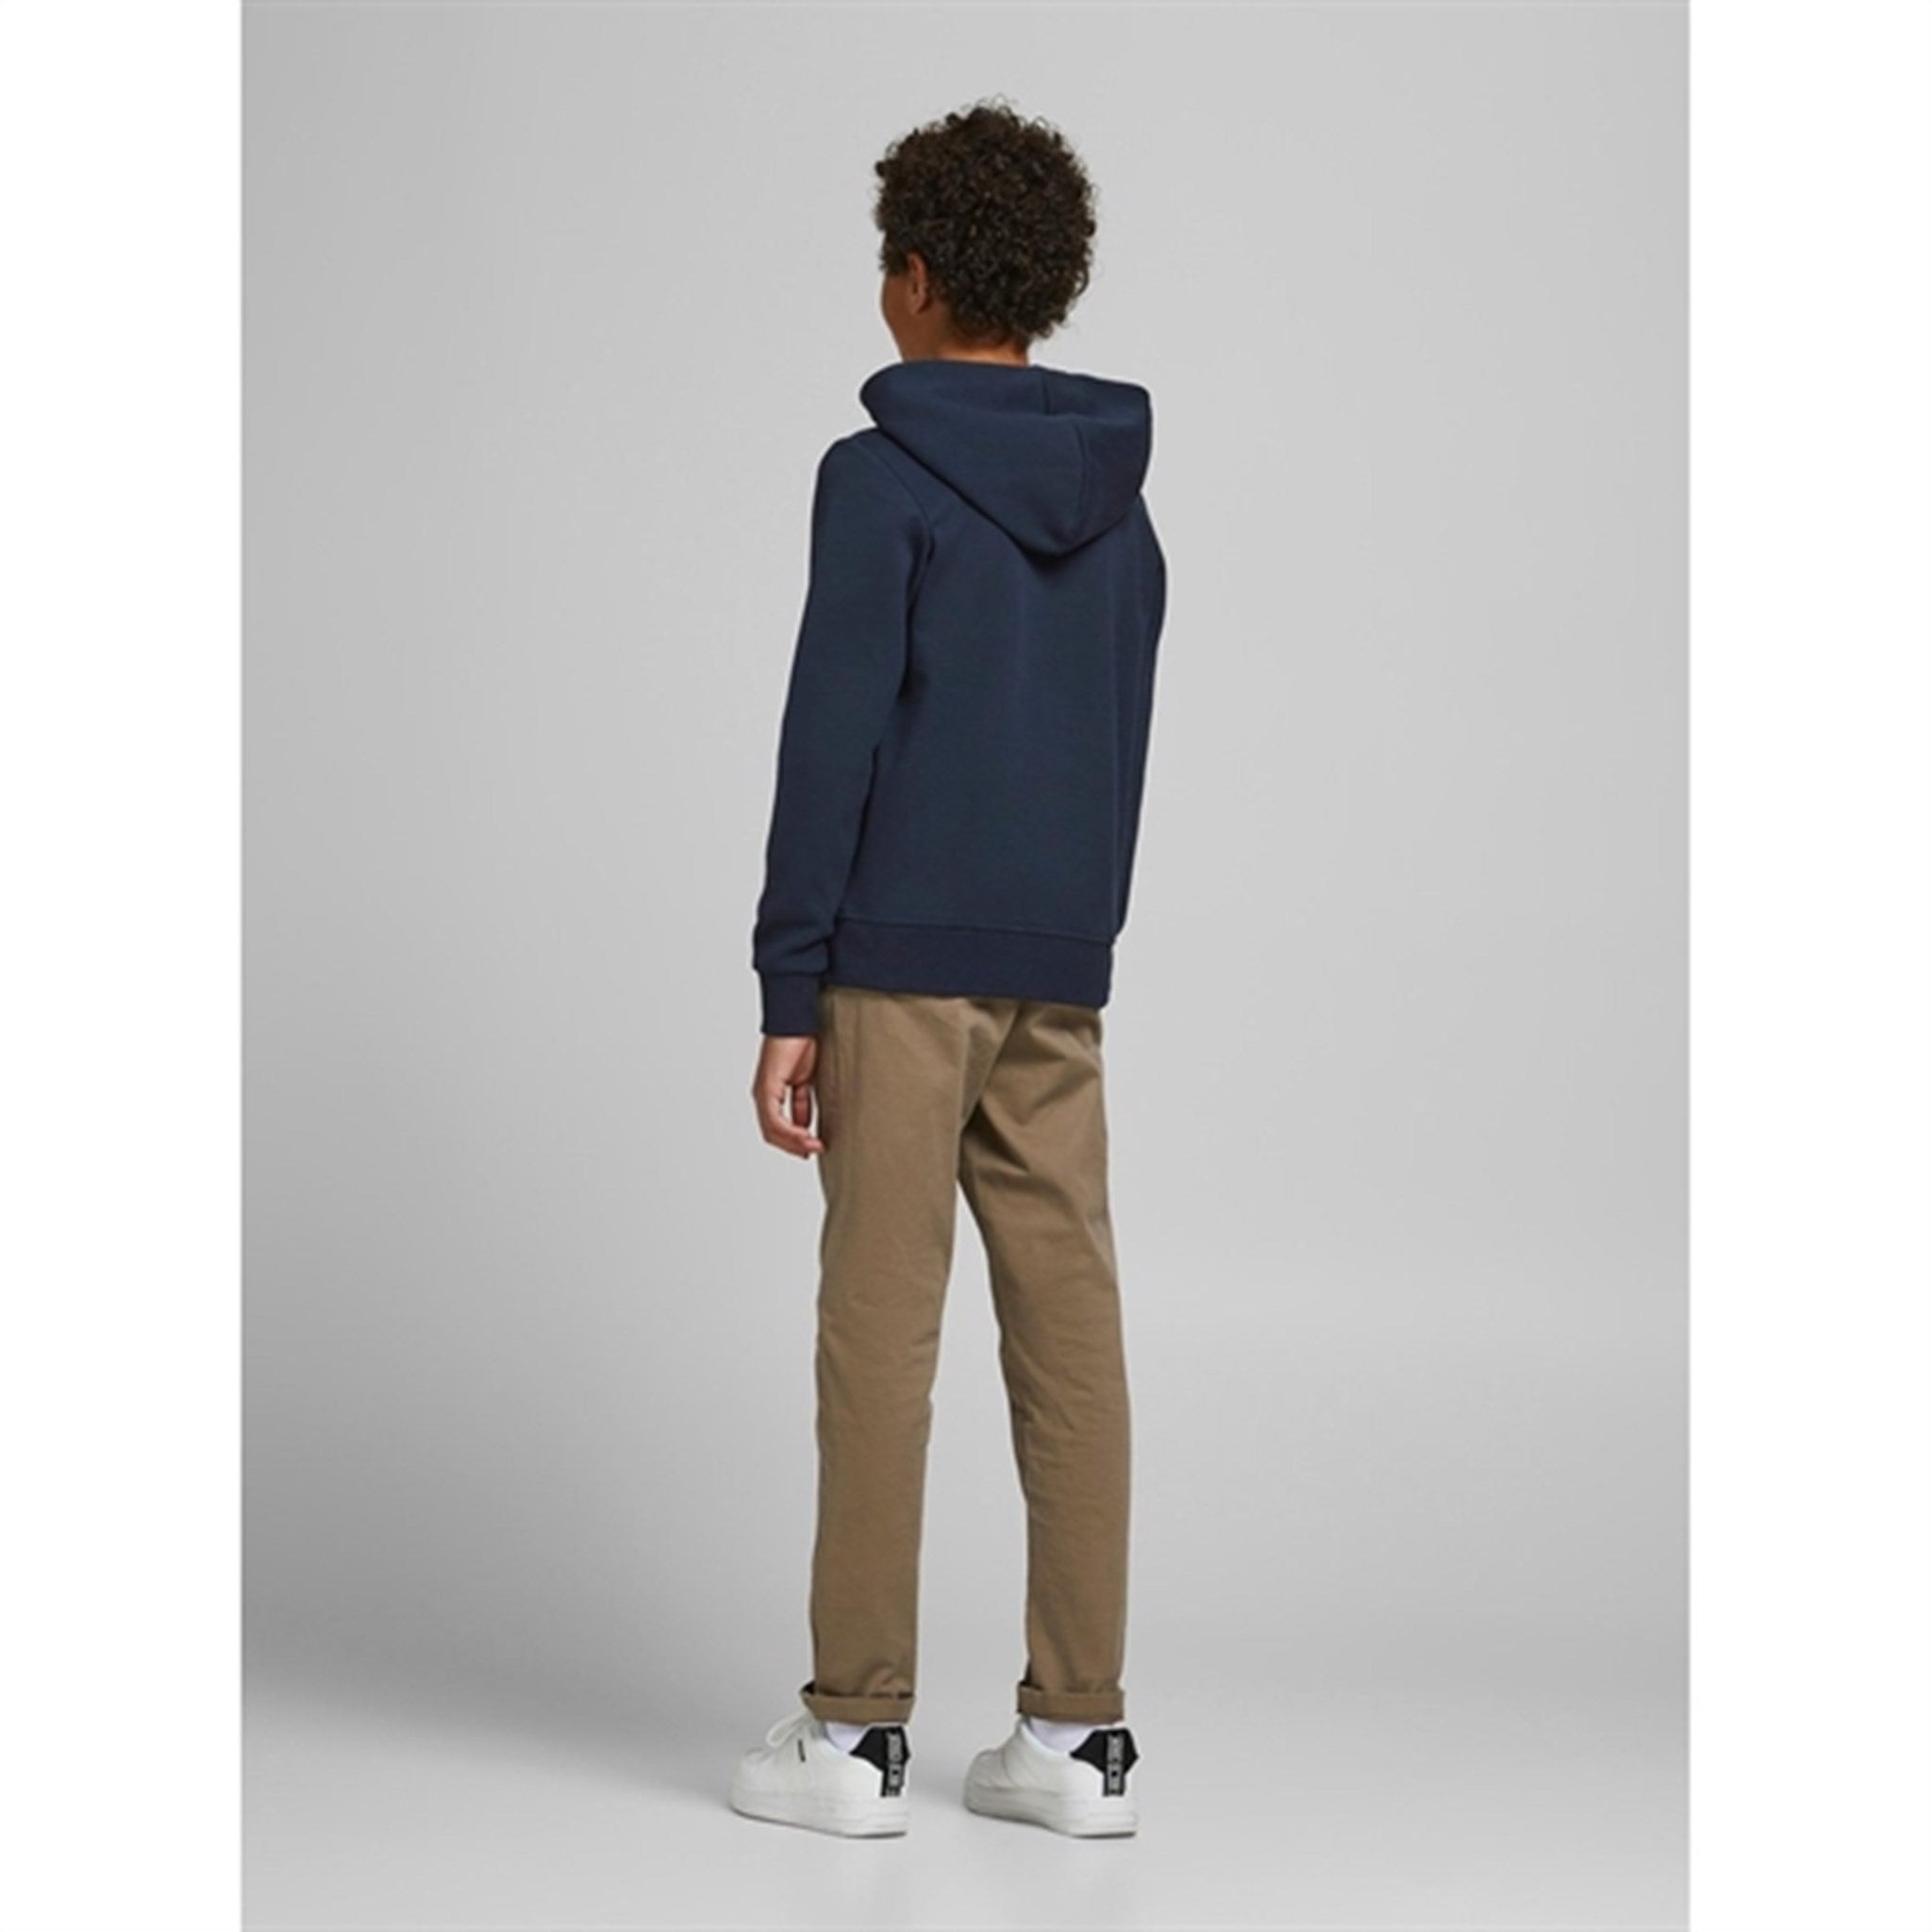 Jack & Jones Junior Navy Blazer Basic Sweatshirt with Zipper Noos 3